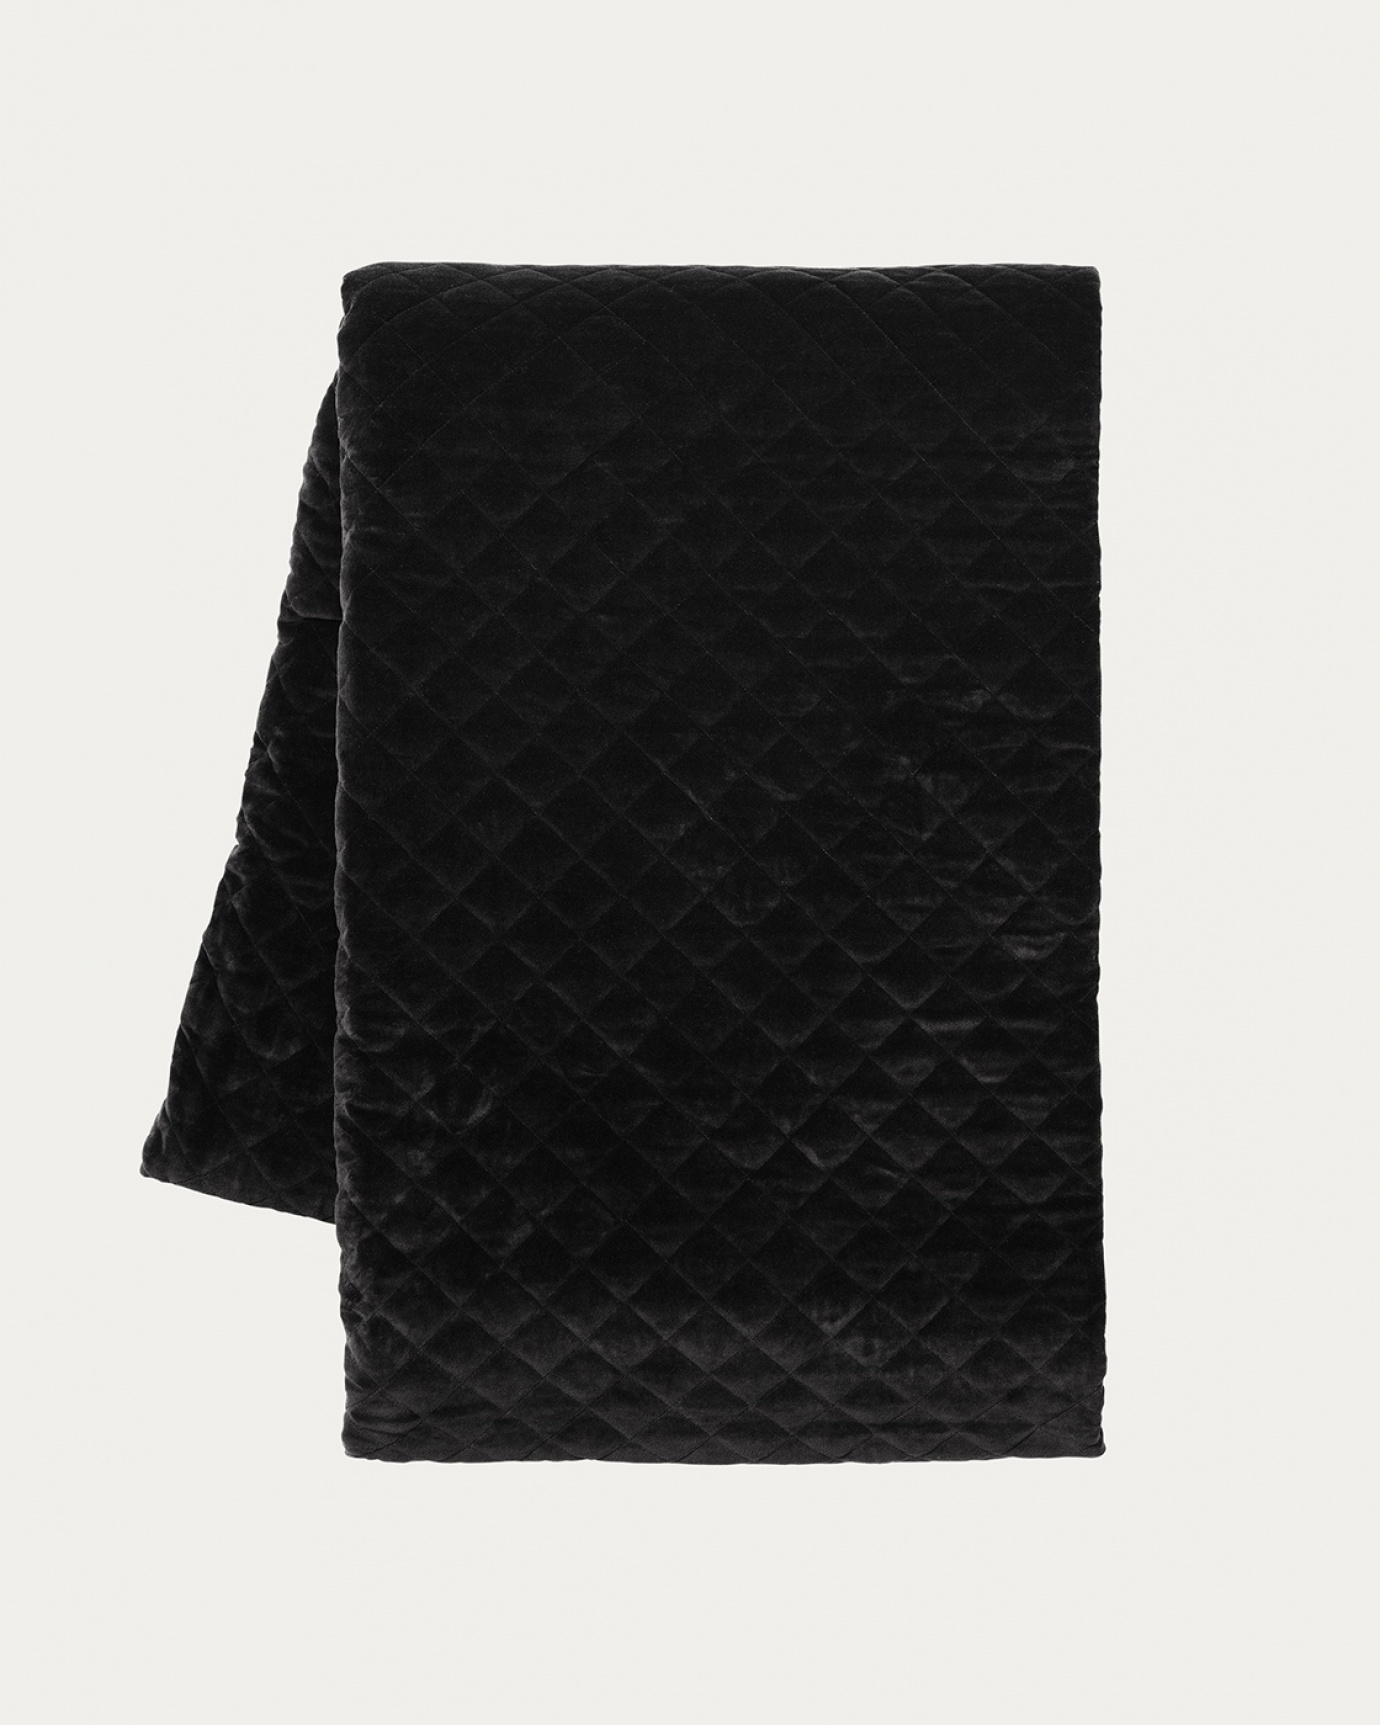 Image du produit couvre-lit PICCOLO noir en velours de coton biologique doux pour lit simple de LINUM DESIGN. Taille 170 x 260 cm.